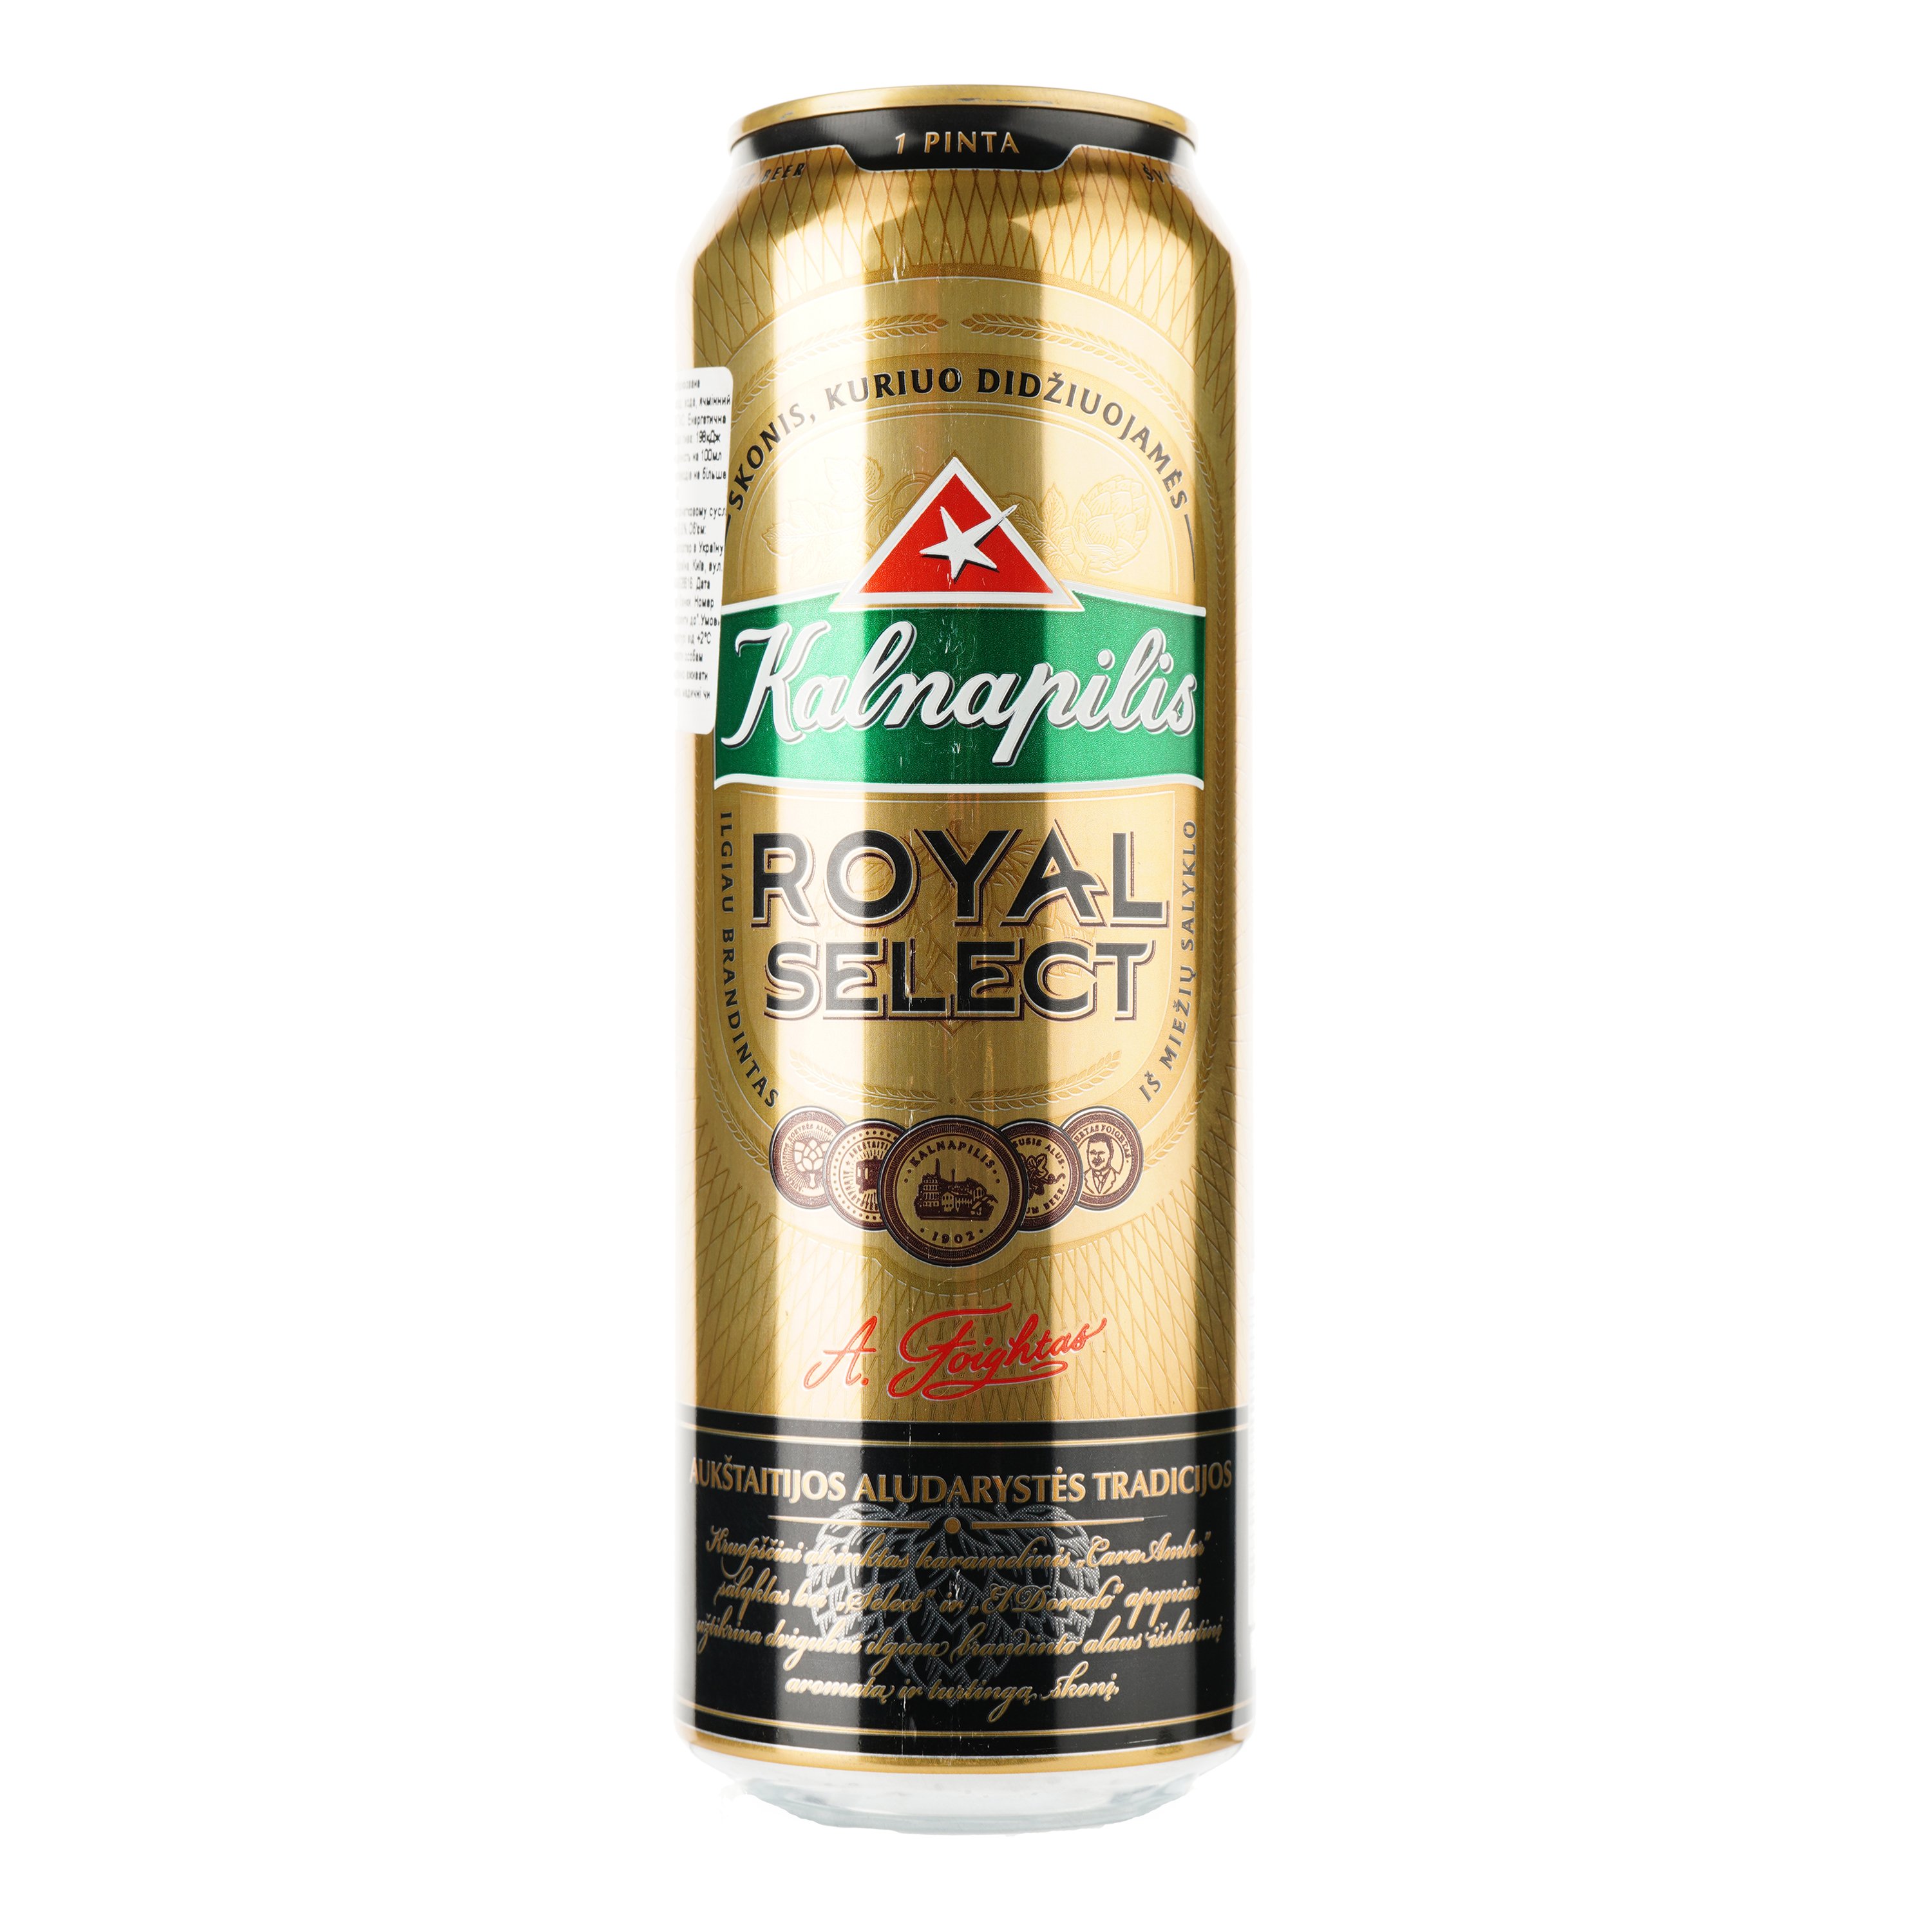 Пиво Kalnapilis Royal Select светлое, 5.6%, ж/б, 0.568 л - фото 1